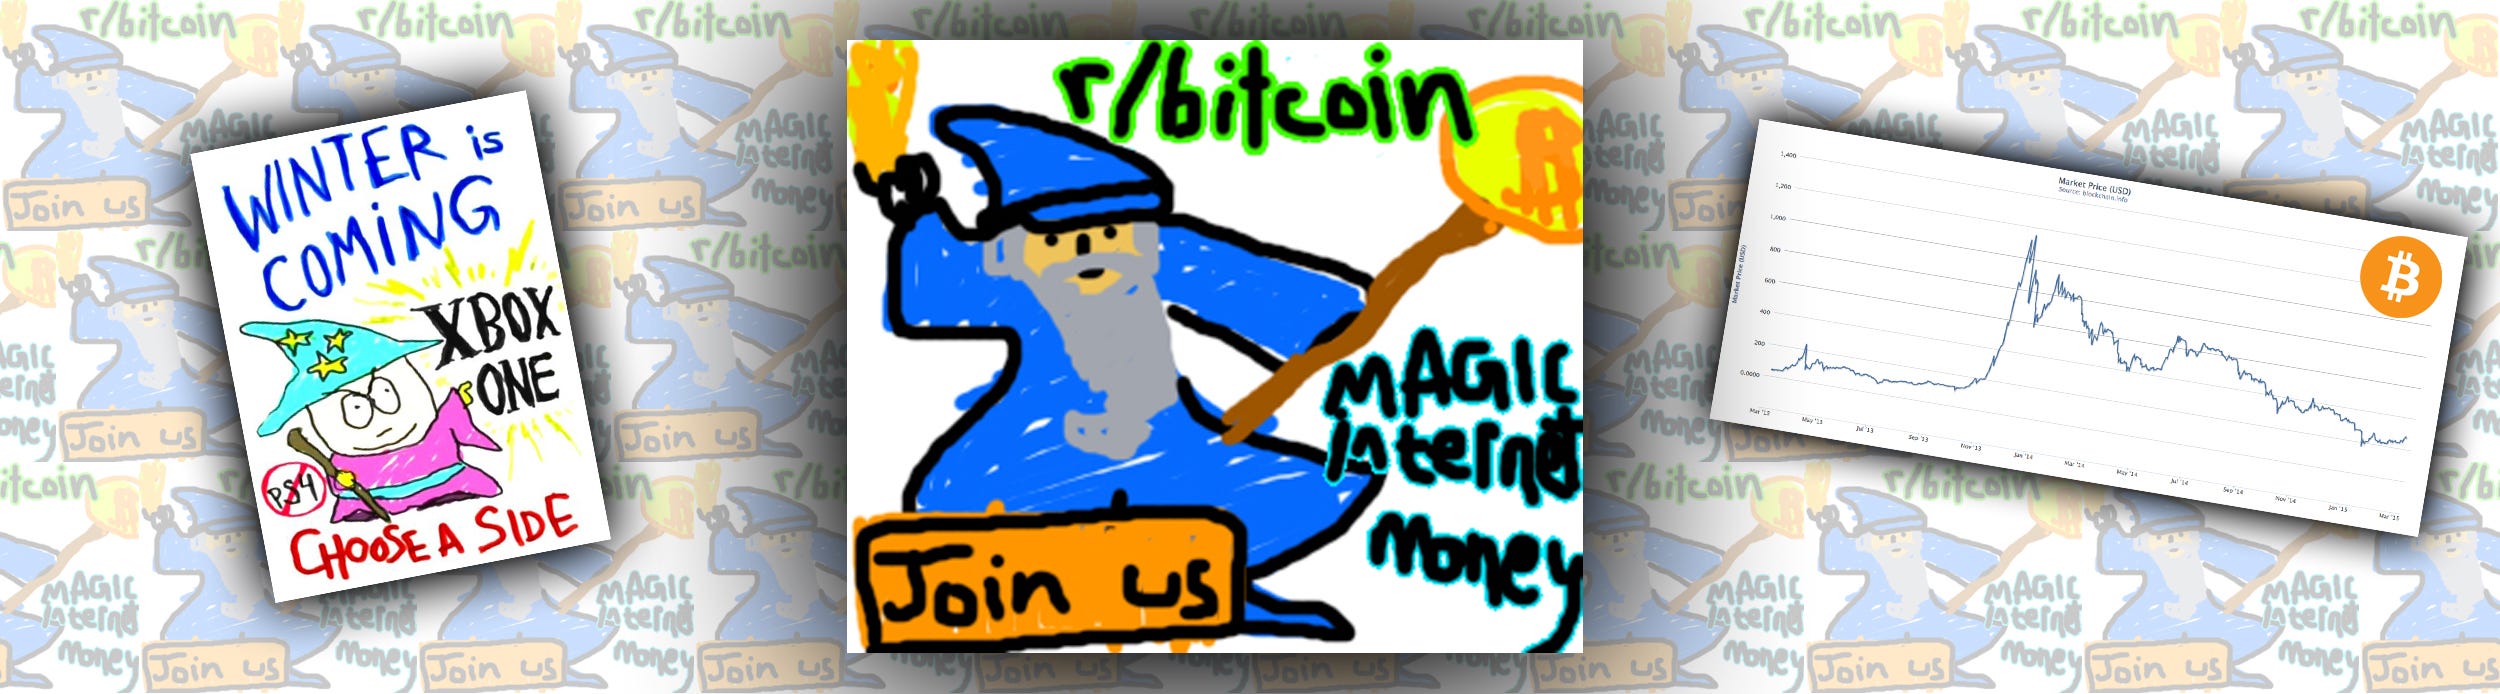 bitcoin magic